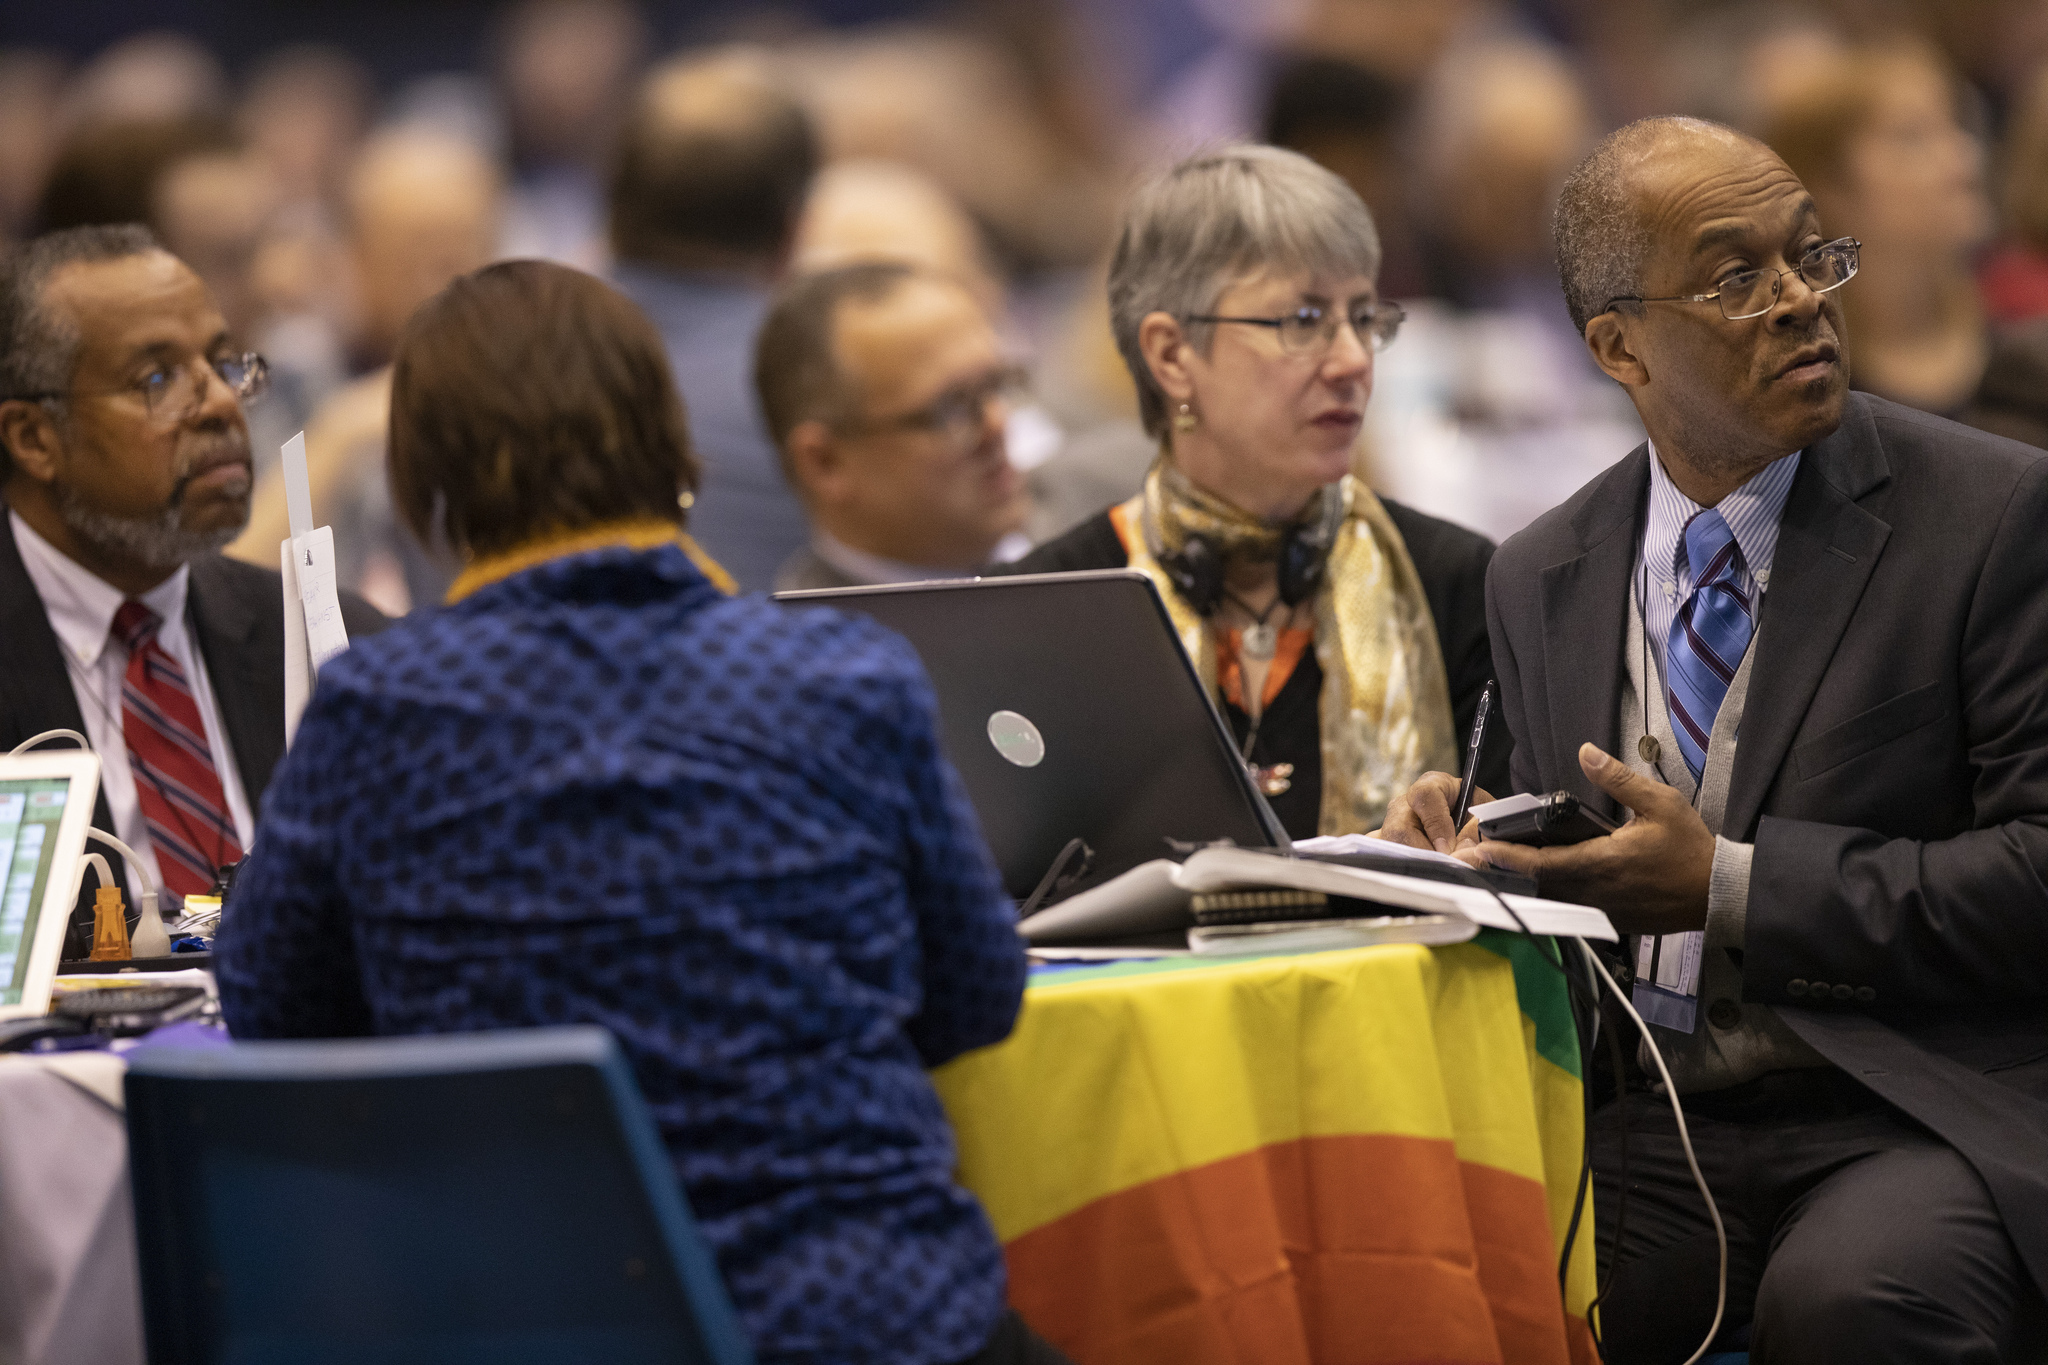 Les délégués écoutent et se préparent à voter ce 25 Février lors de la Conférence Générale   2019 de l’Eglise Méthodiste Unie à l'intérieur du Dôme, de l’America's Center à St. Louis.   Photo de Kathleen Barry, UMNS.